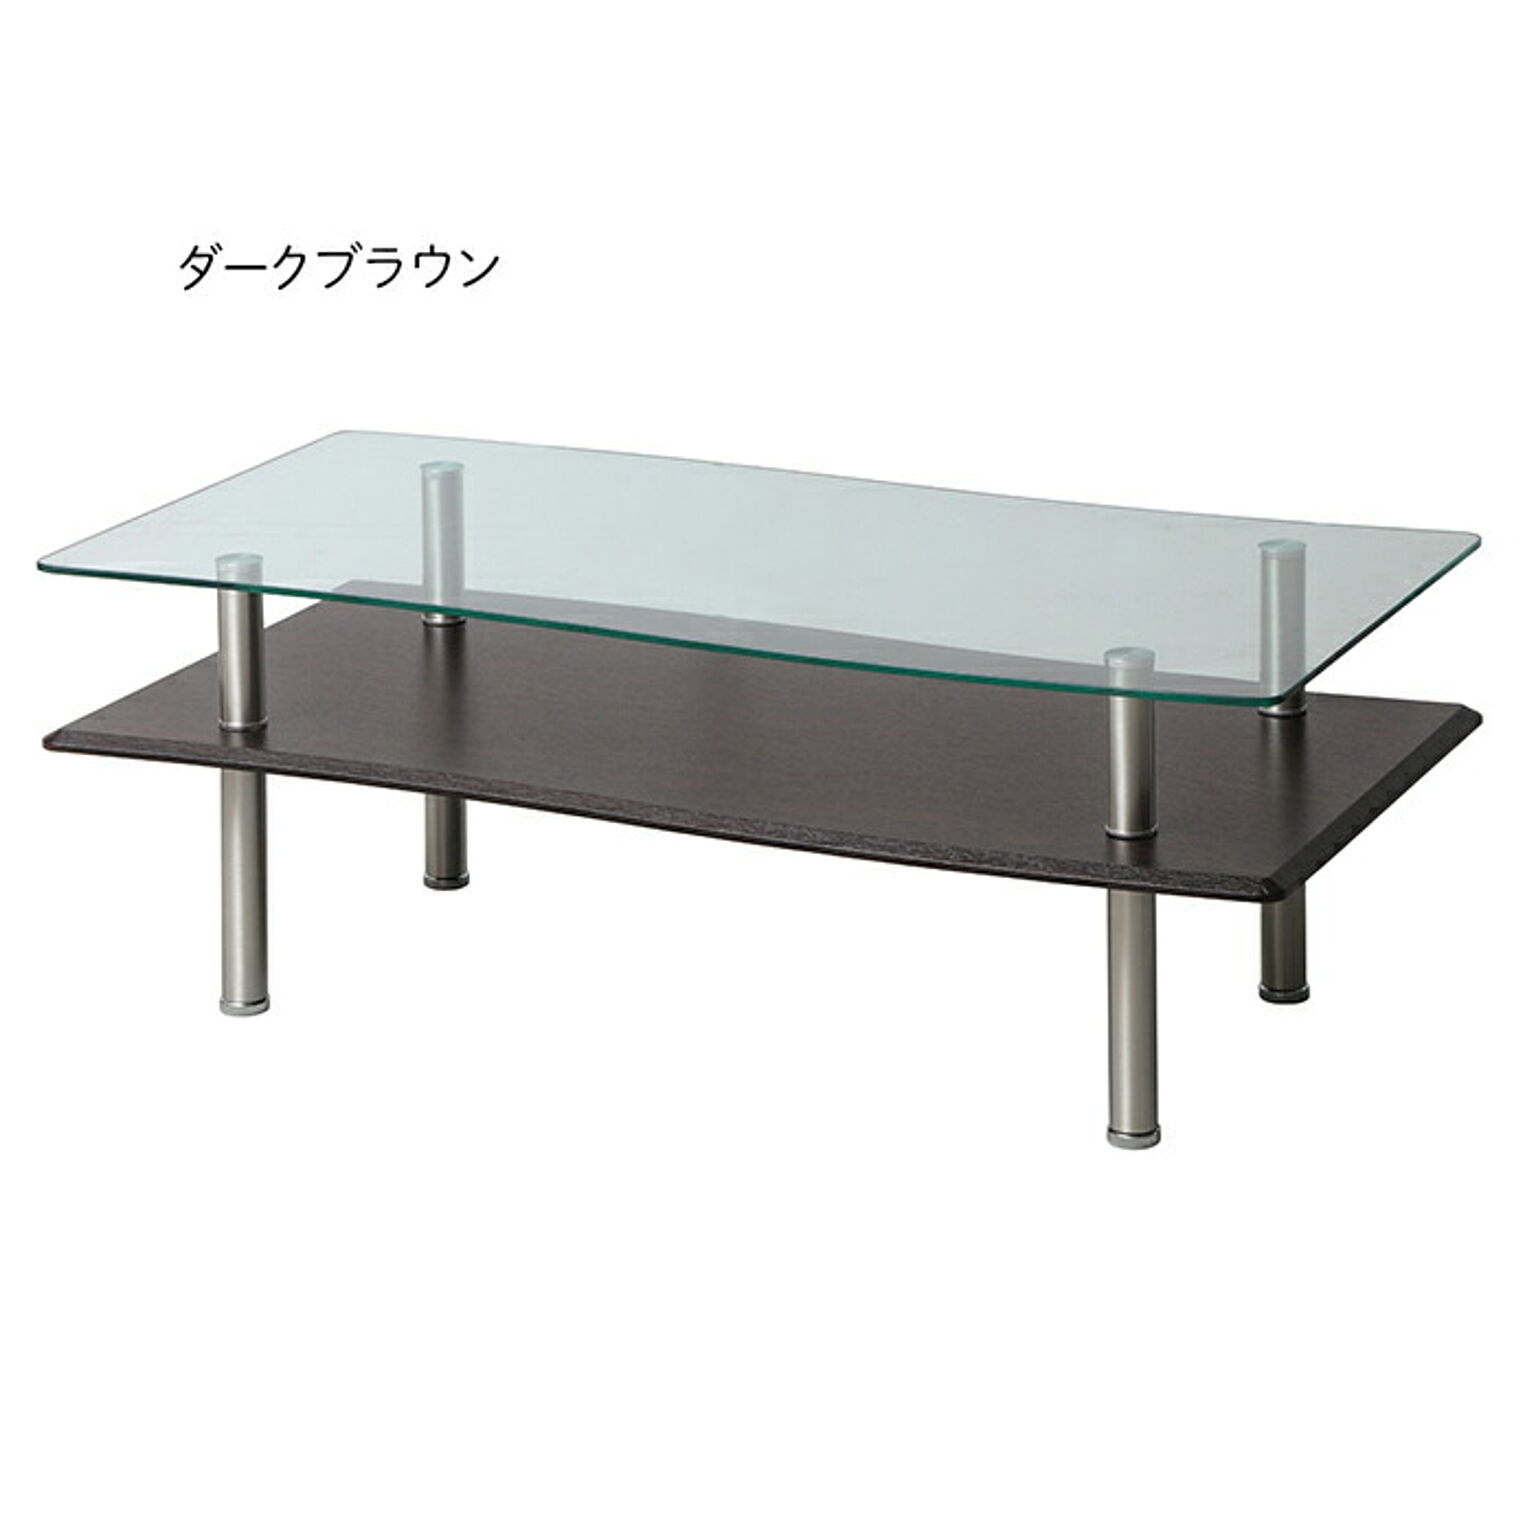 テーブル 組立式 ブリーズ リビングテーブル 110 幅1100x奥行550x高さ410mm あずま工芸